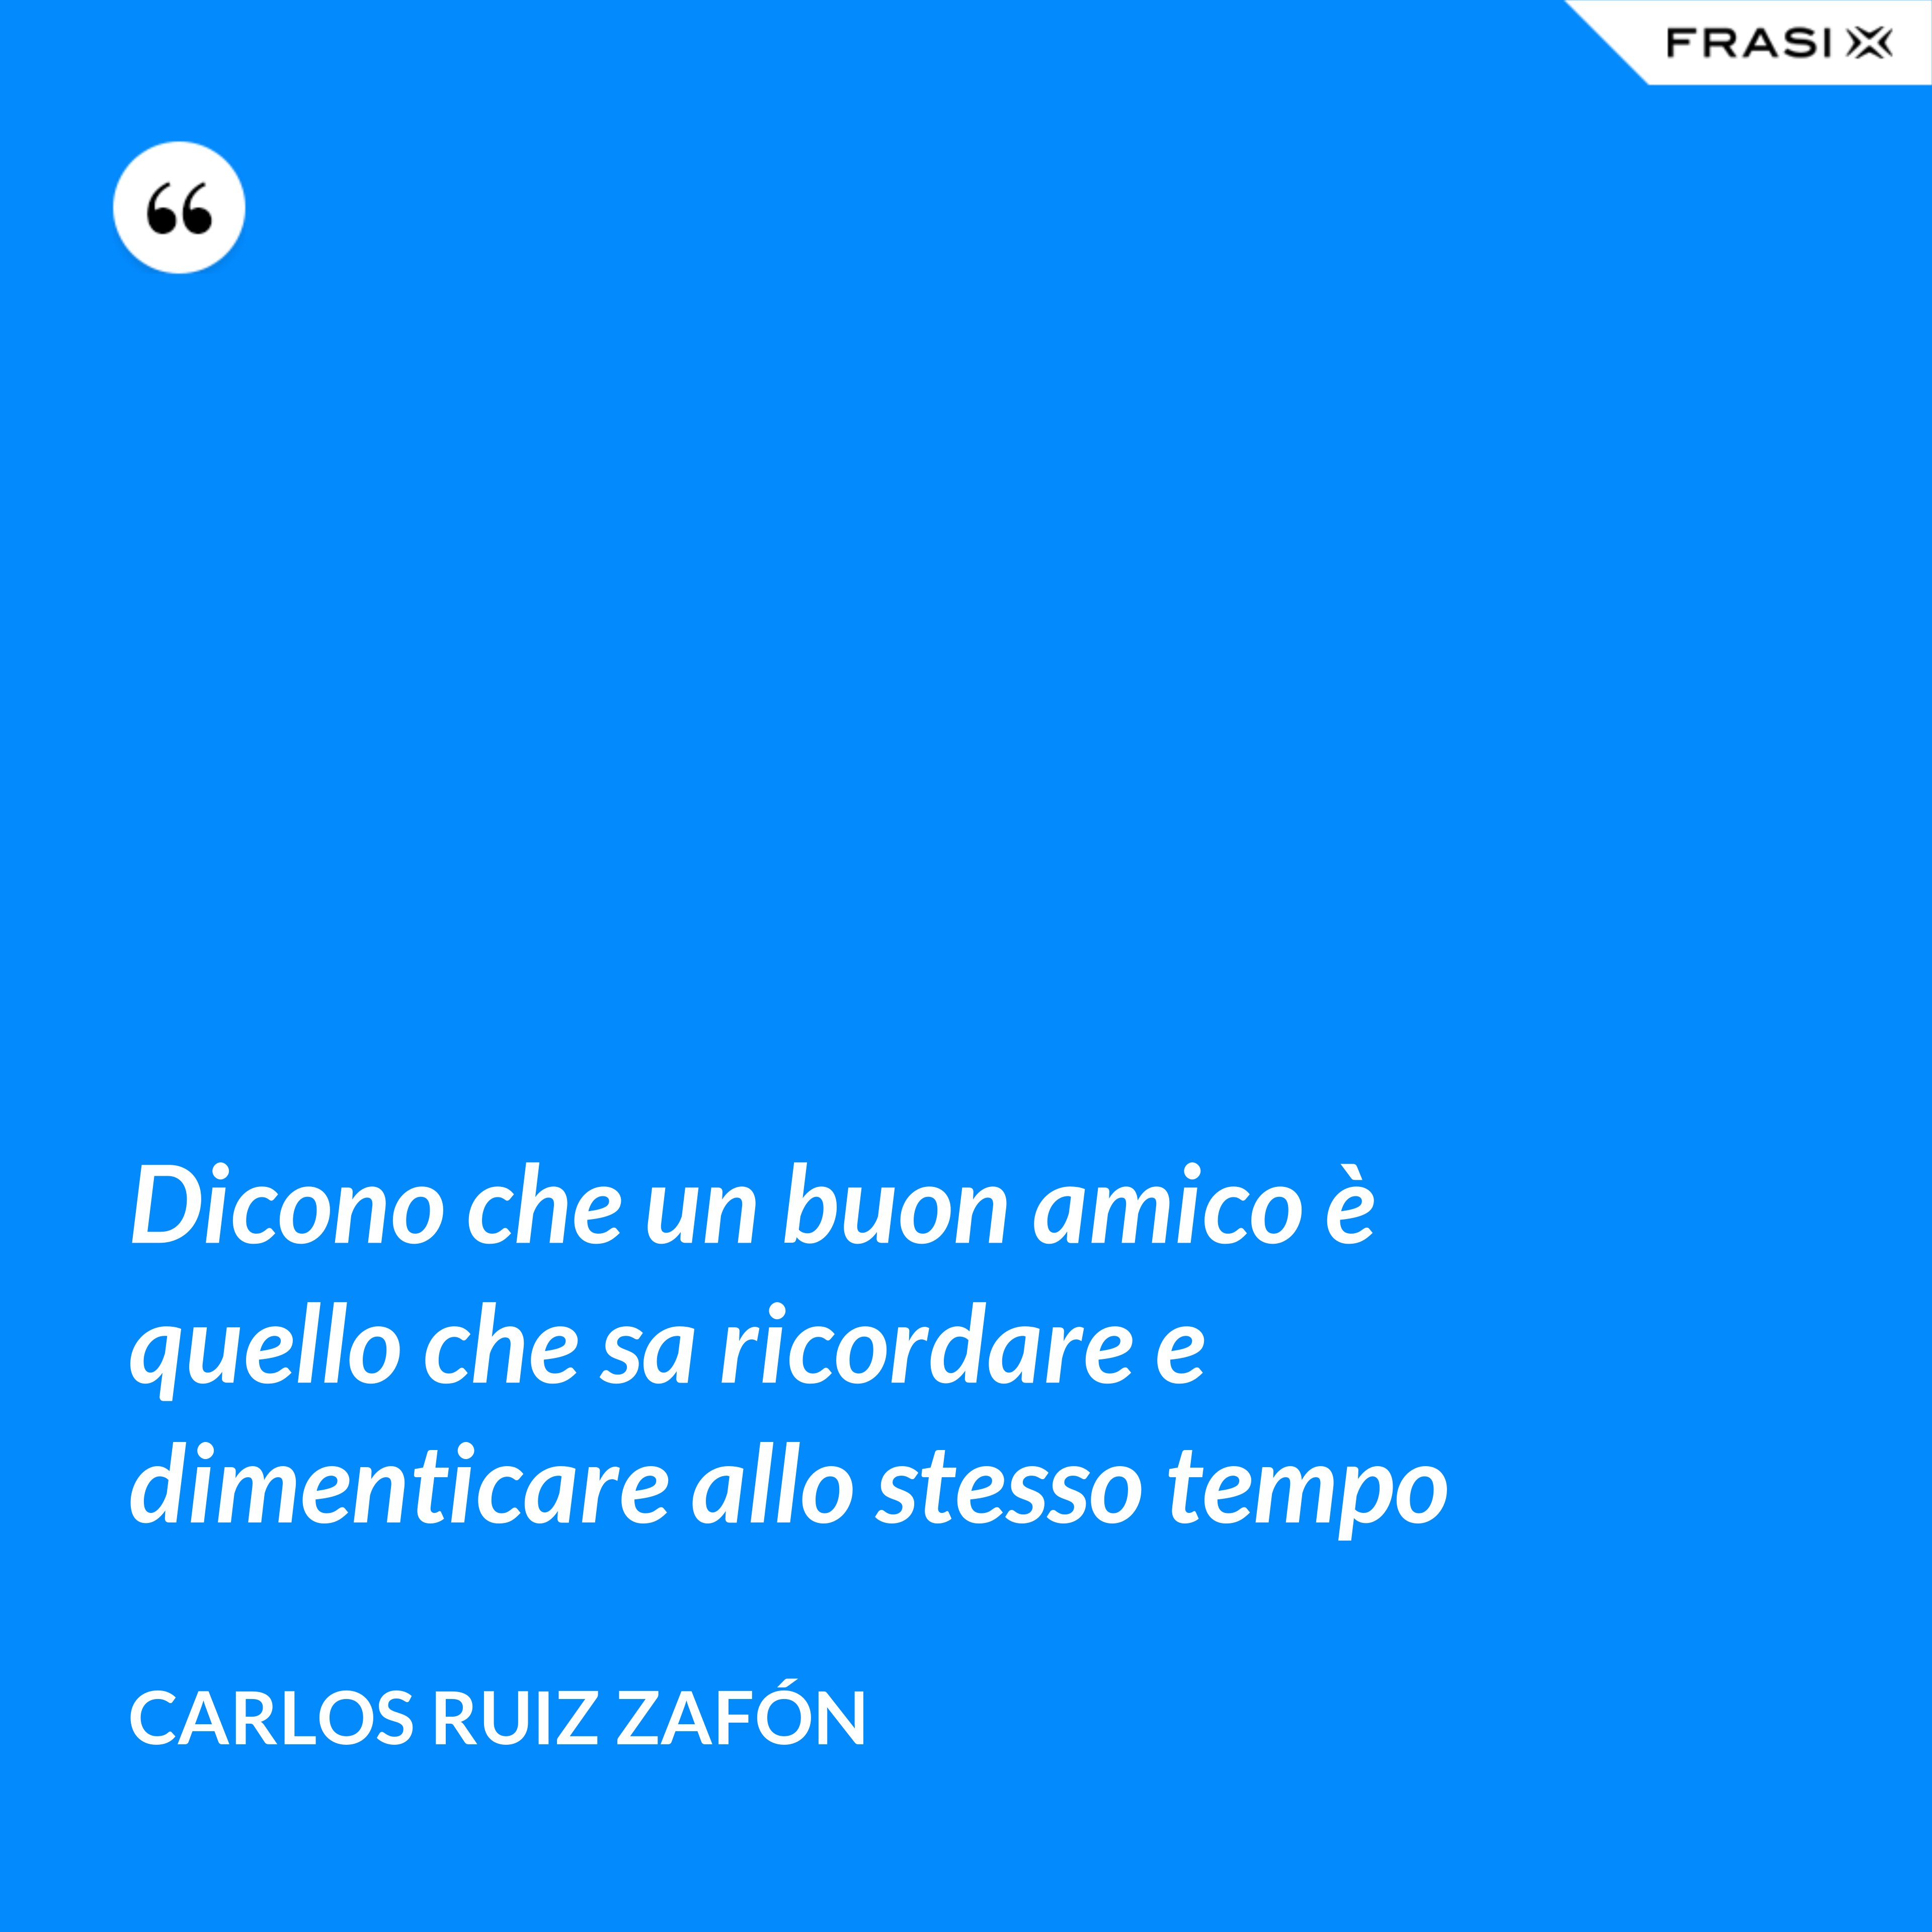 Dicono che un buon amico è quello che sa ricordare e dimenticare allo stesso tempo - Carlos Ruiz Zafón